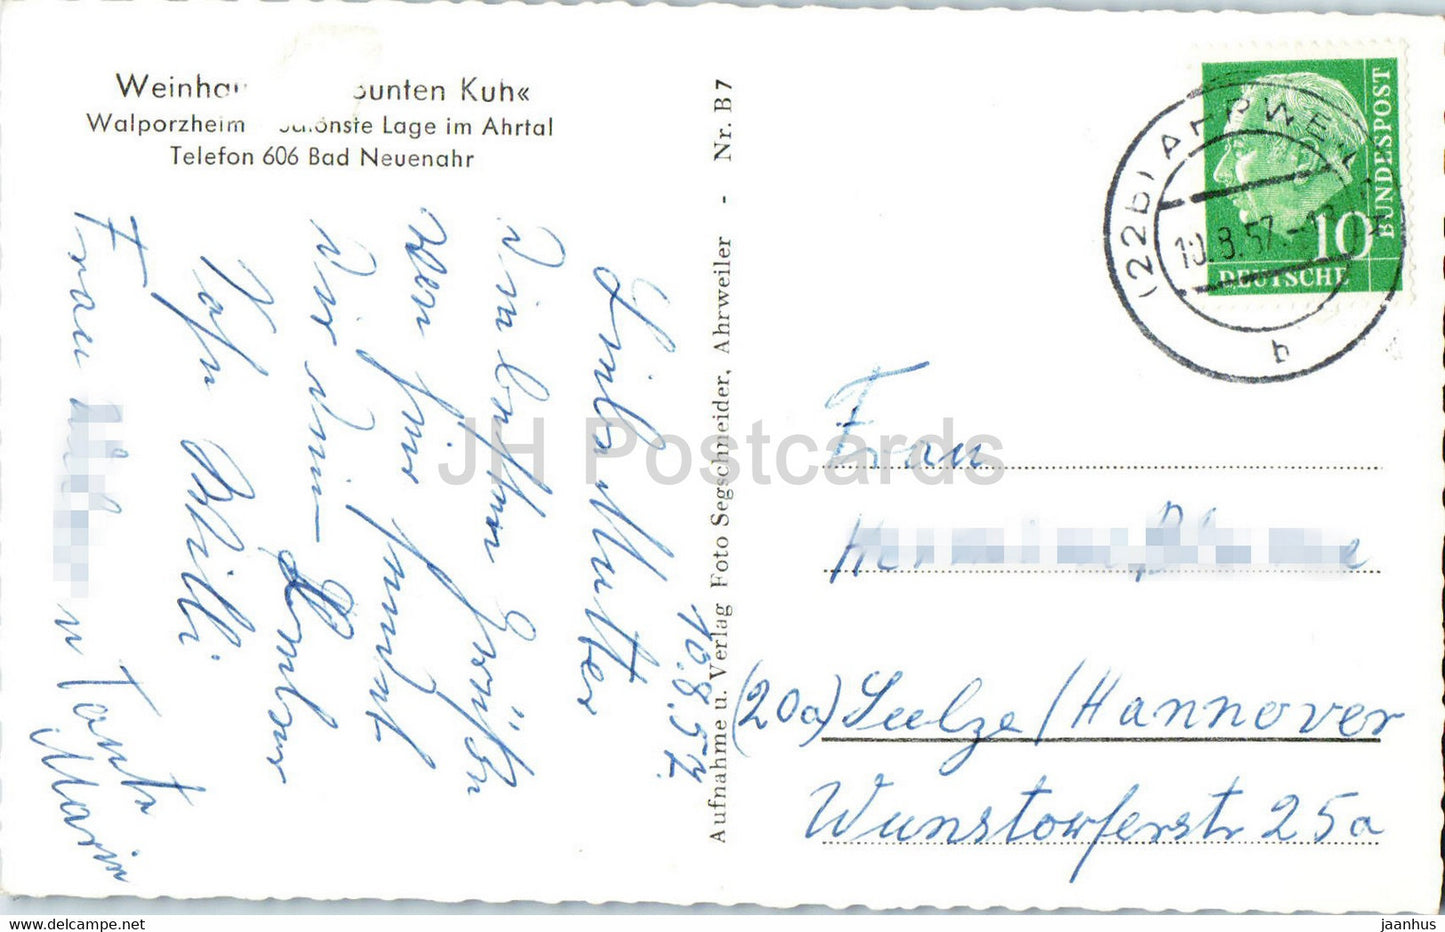 Walporzheim im Ahrtal Bunte Kuh Terrasse - alte Postkarte - 1957 - Deutschland - gebraucht